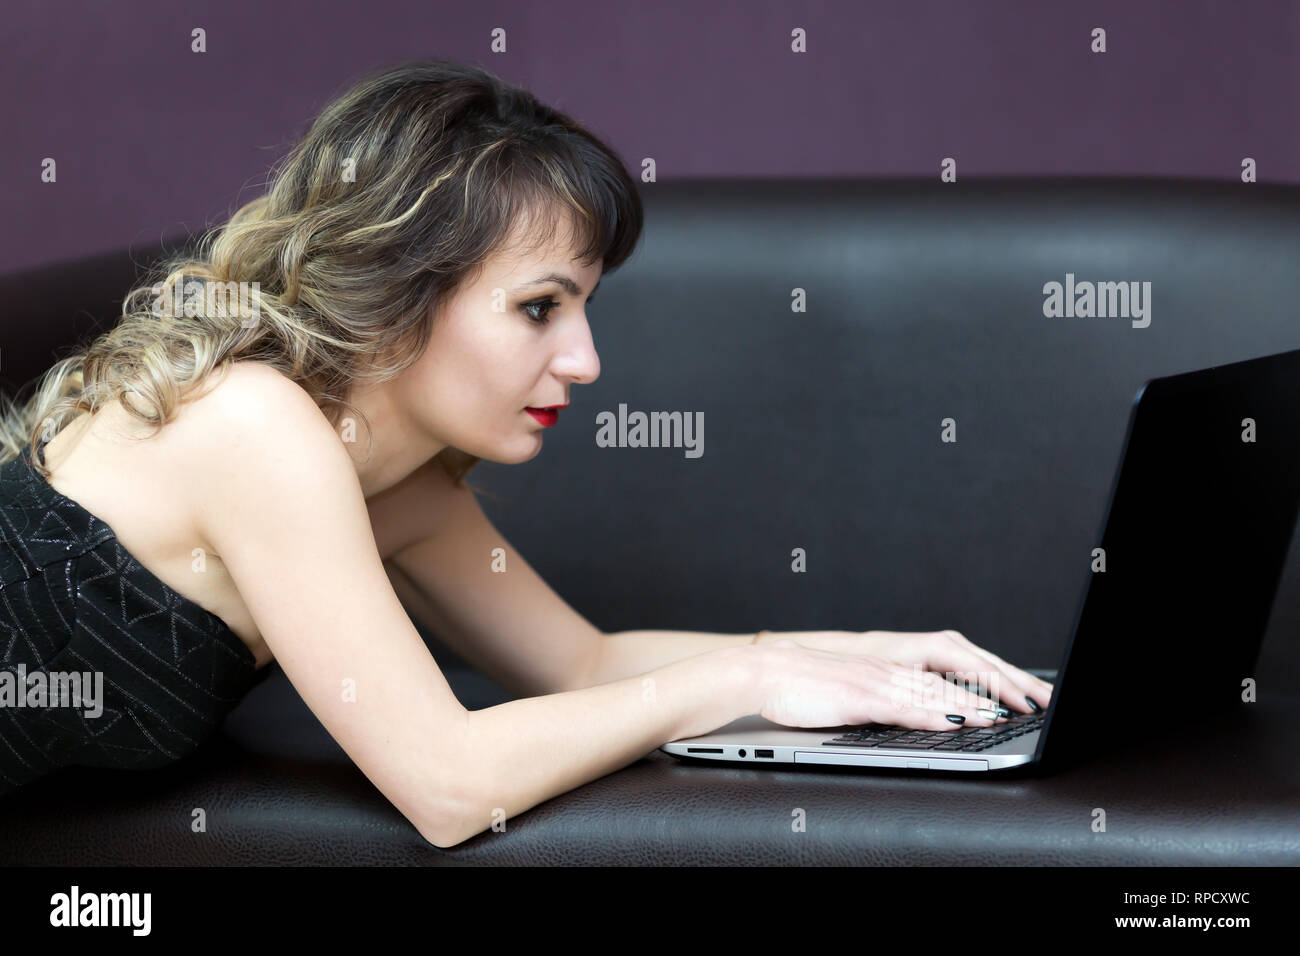 Une fille brune avec les cheveux ondulés travaille à un ordinateur. Banque D'Images